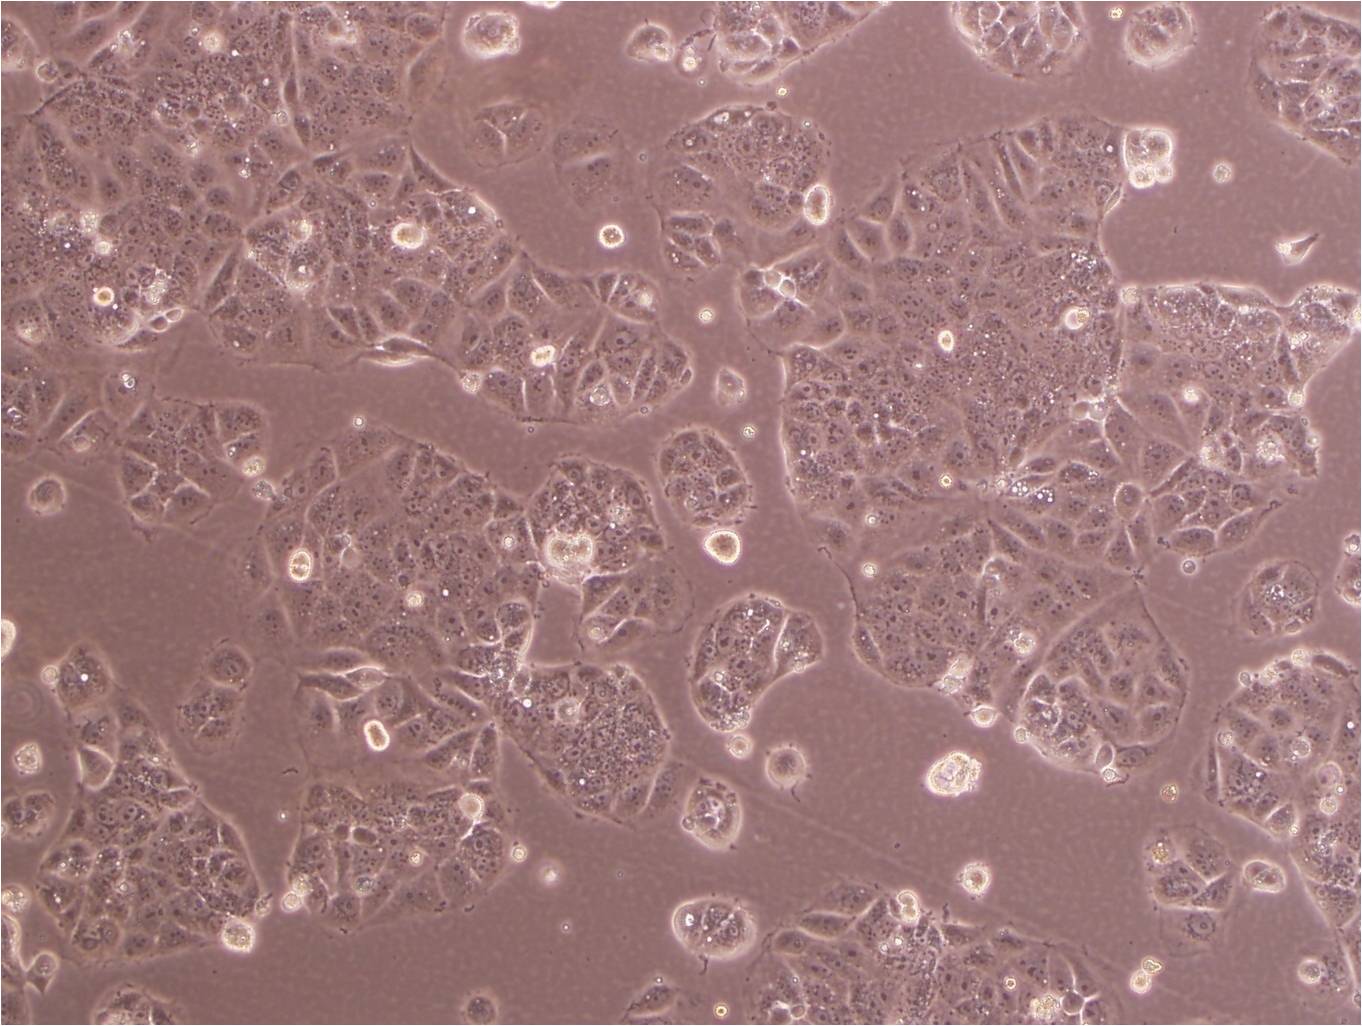 SW1088 Cells|人脑星形胶质瘤可传代细胞系,SW1088 Cells